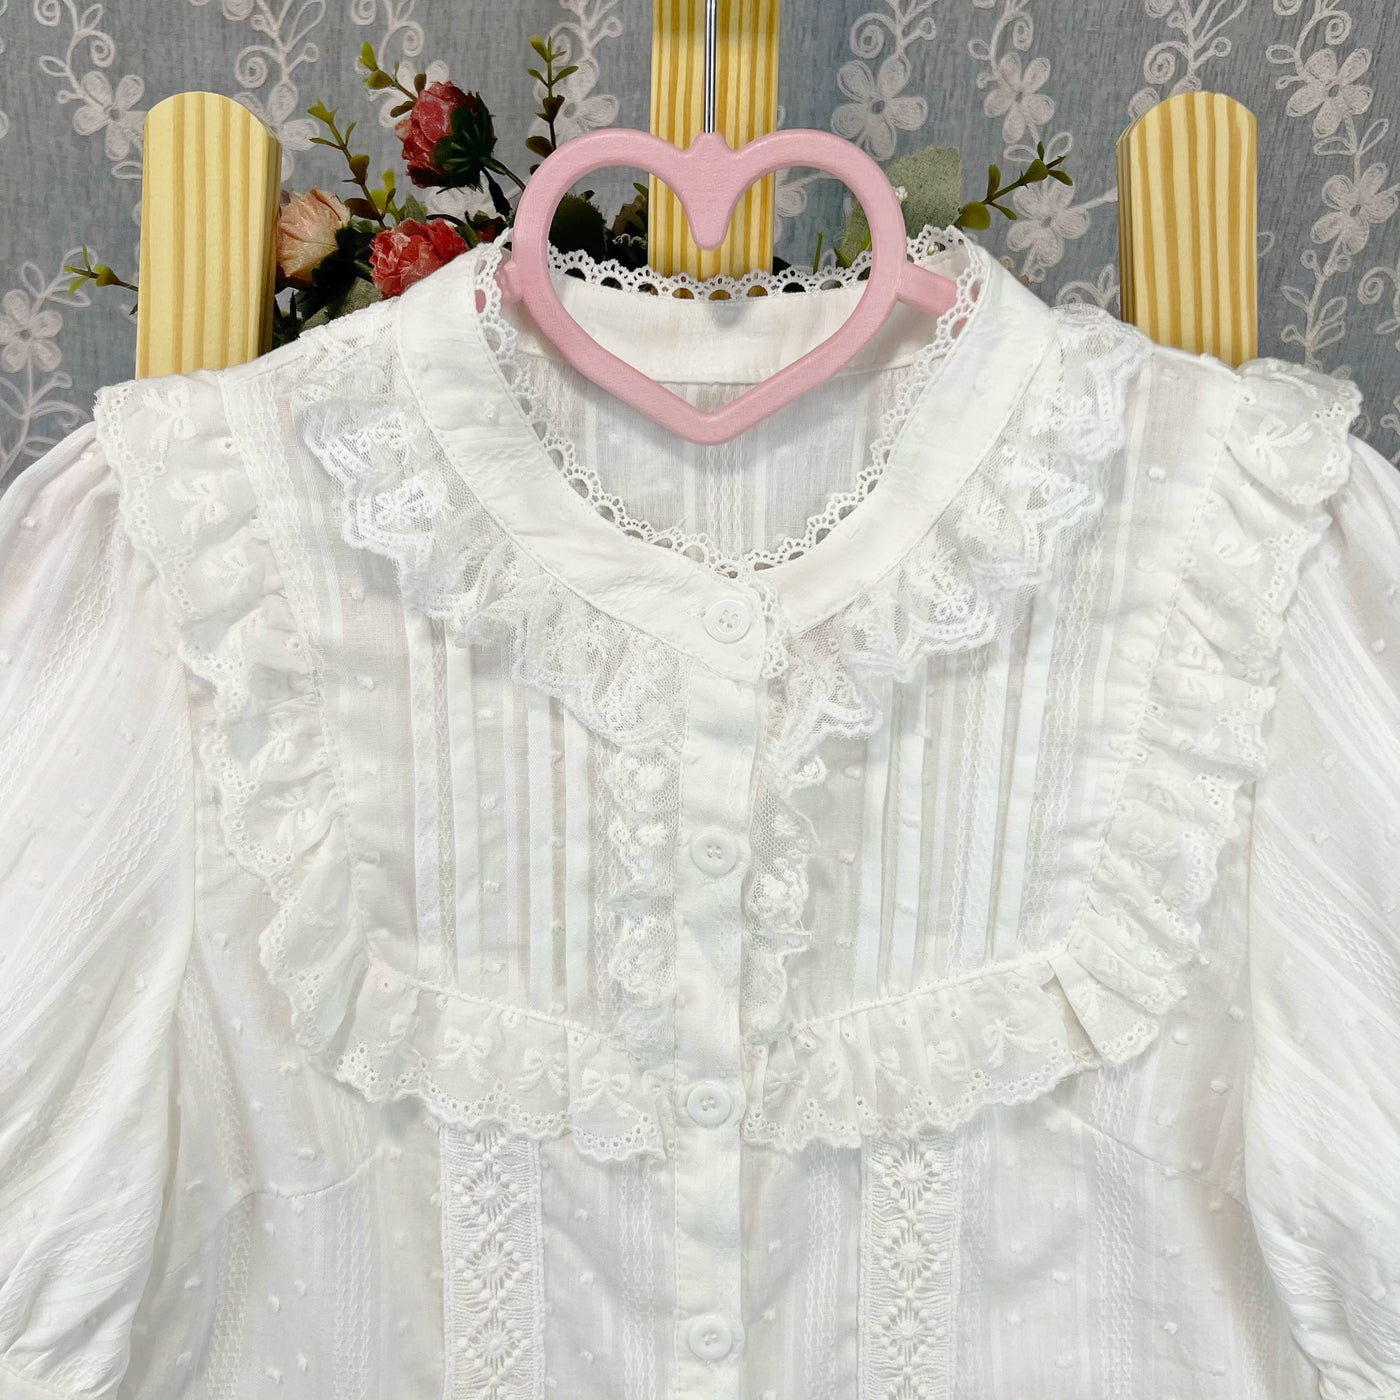 DMFS Lolita~Sweet Lolita Blouse Cotton Summer Short Sleeve Shirt   